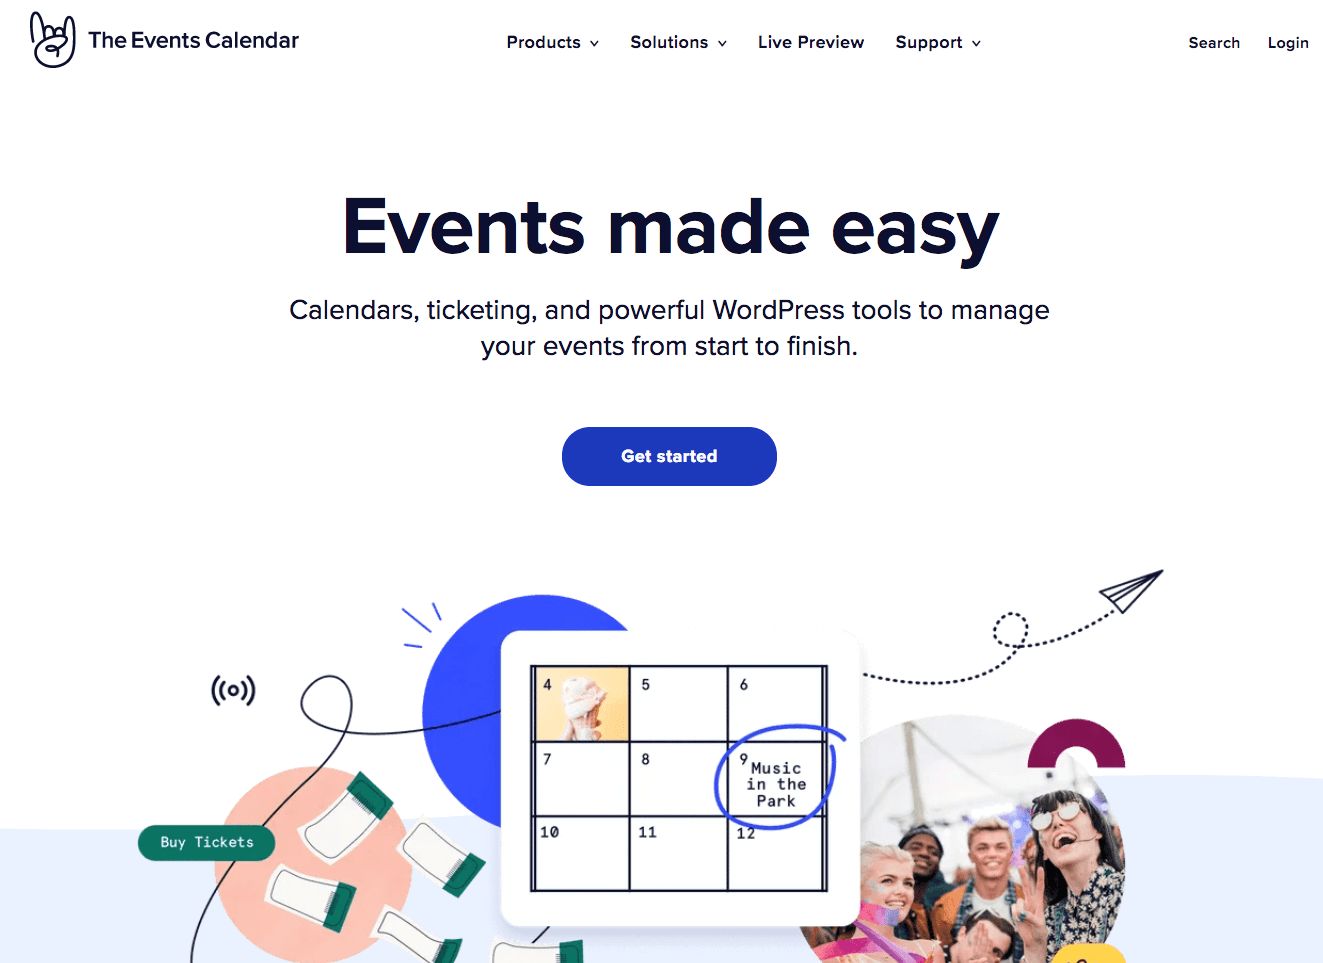 Captura de pantalla de la página web de The Events Calendar